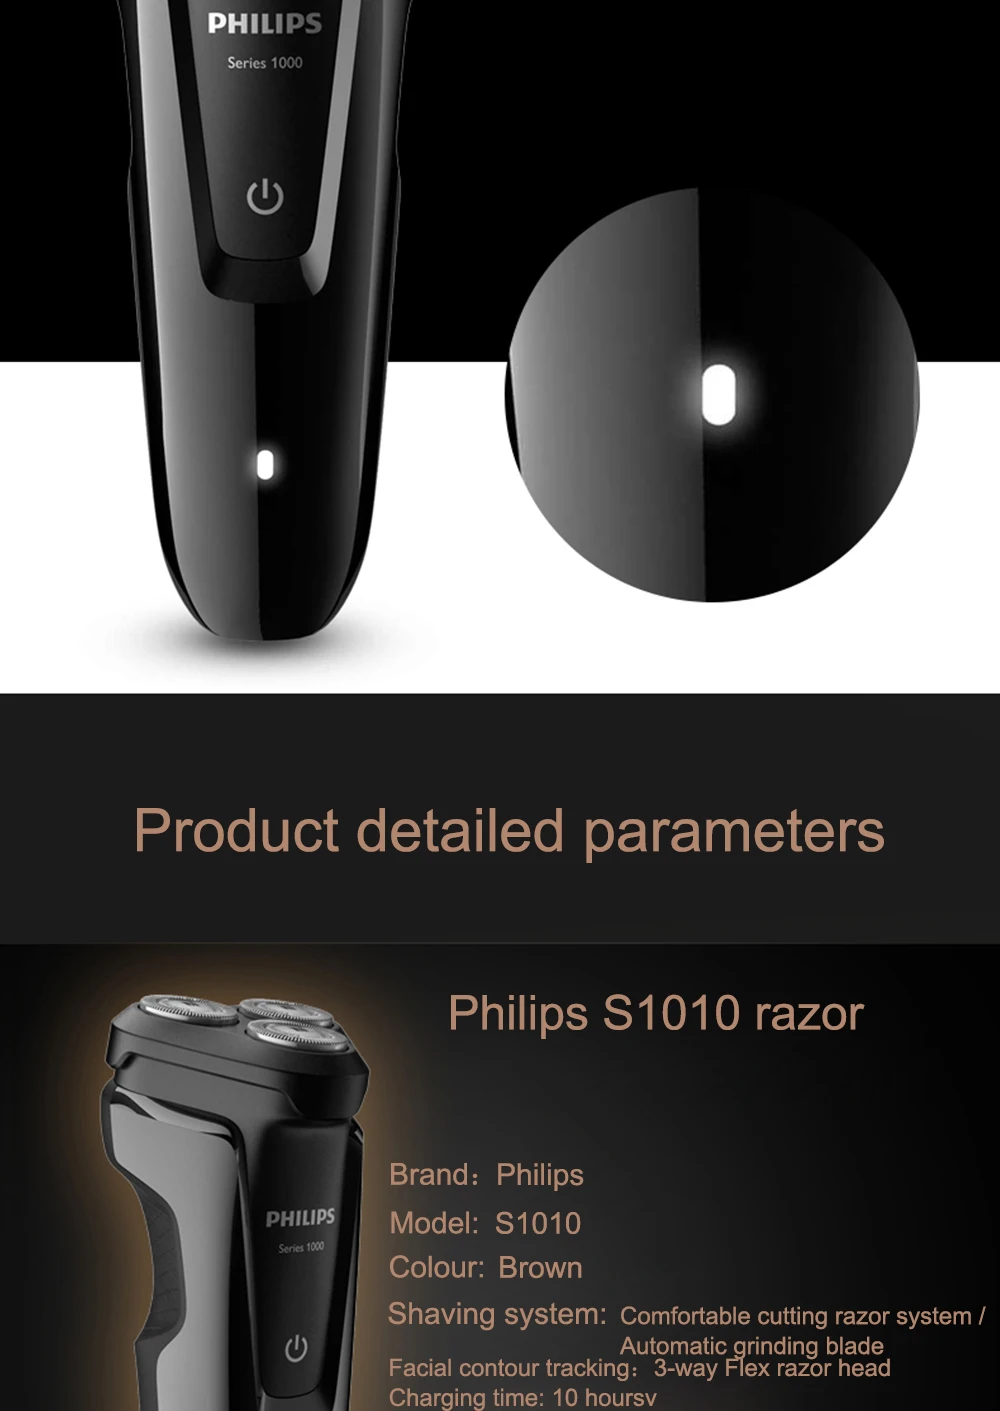 Philips электробритва S1010 роторная перезаряжаемая моющаяся для мужчин электрическая бритва с индикатором зарядки